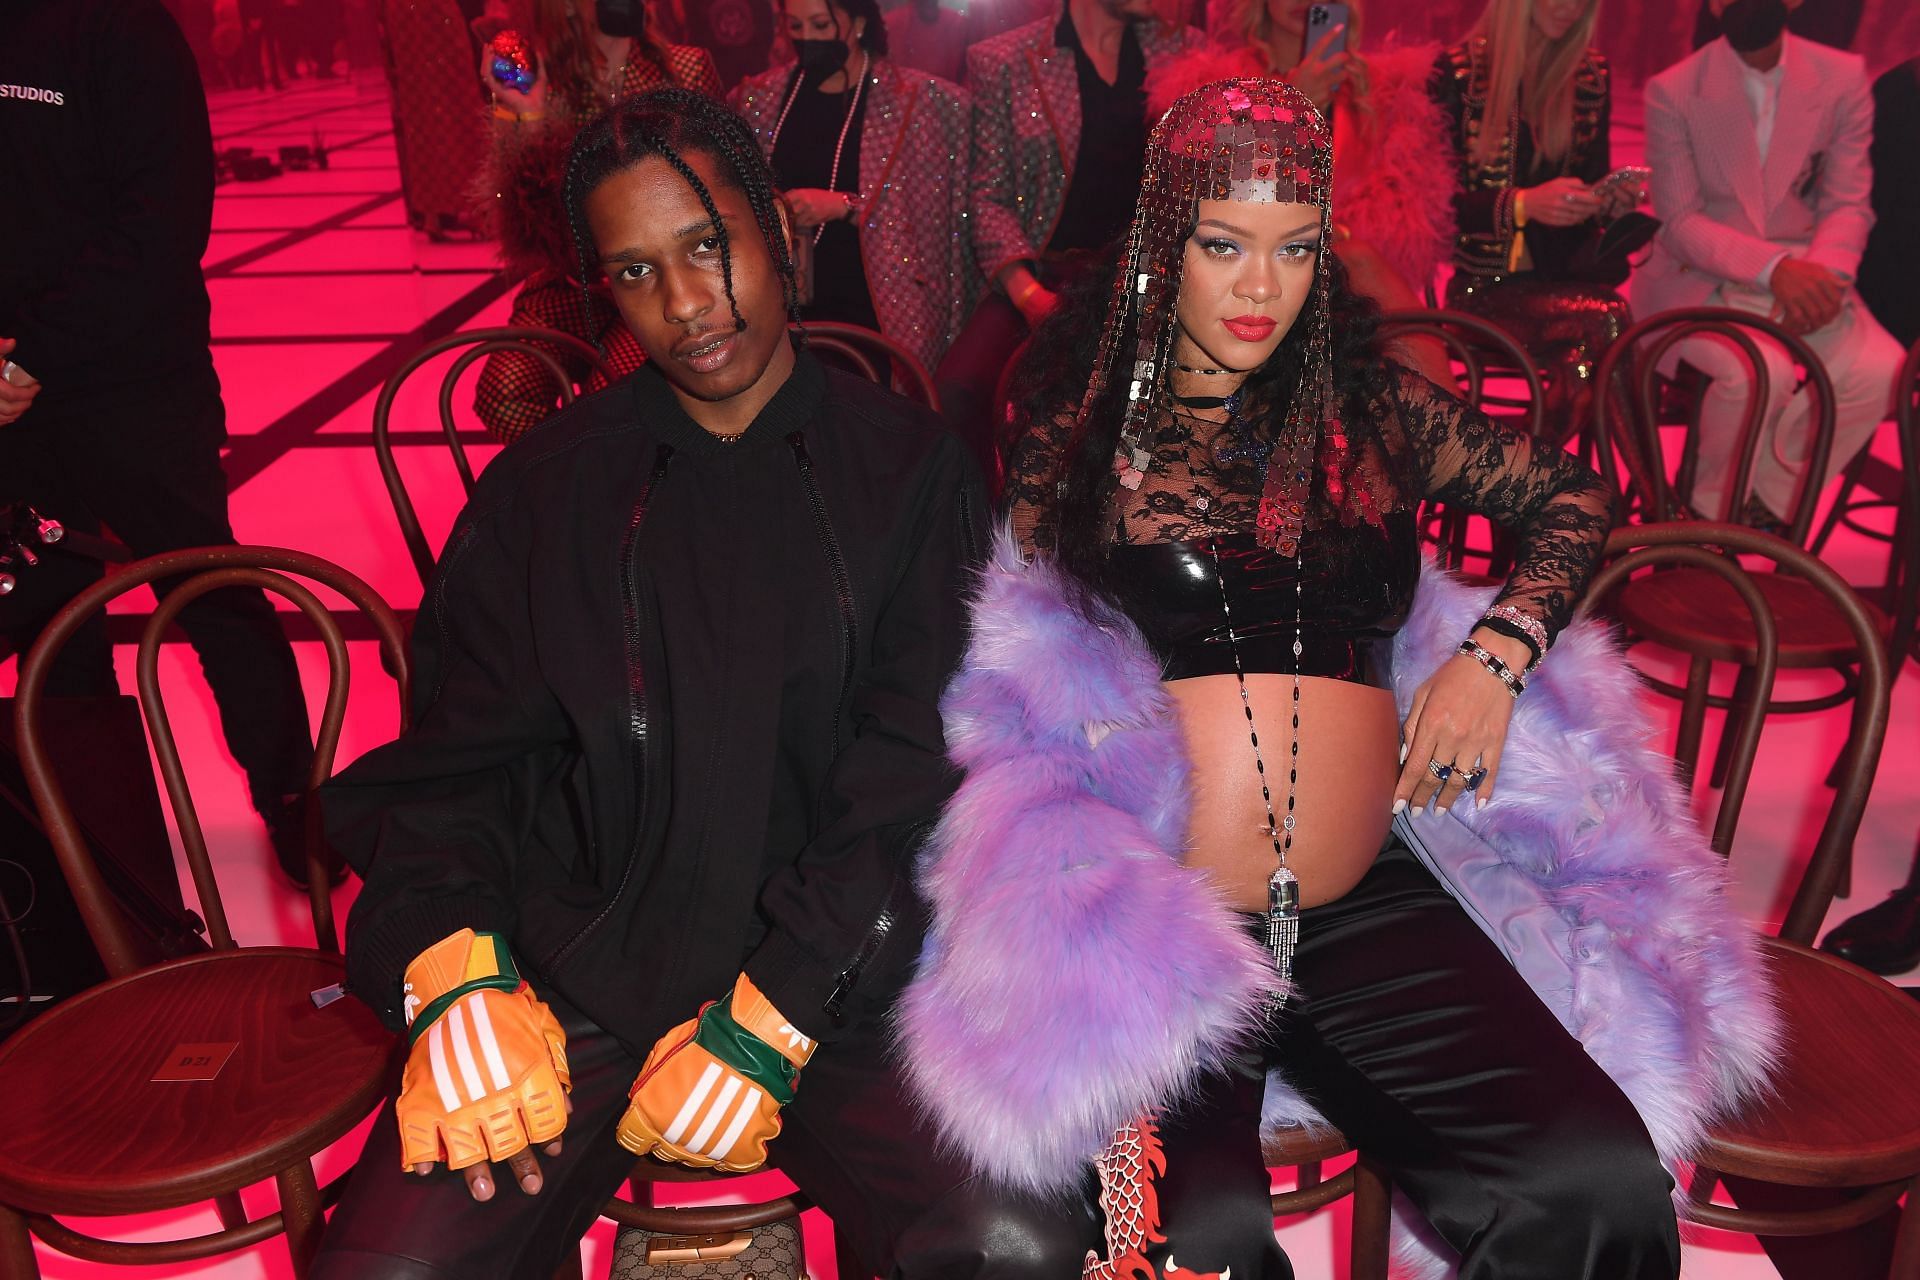 Rihanna and A$AP Rocky at Milan Fashion Week (Image via Getty)